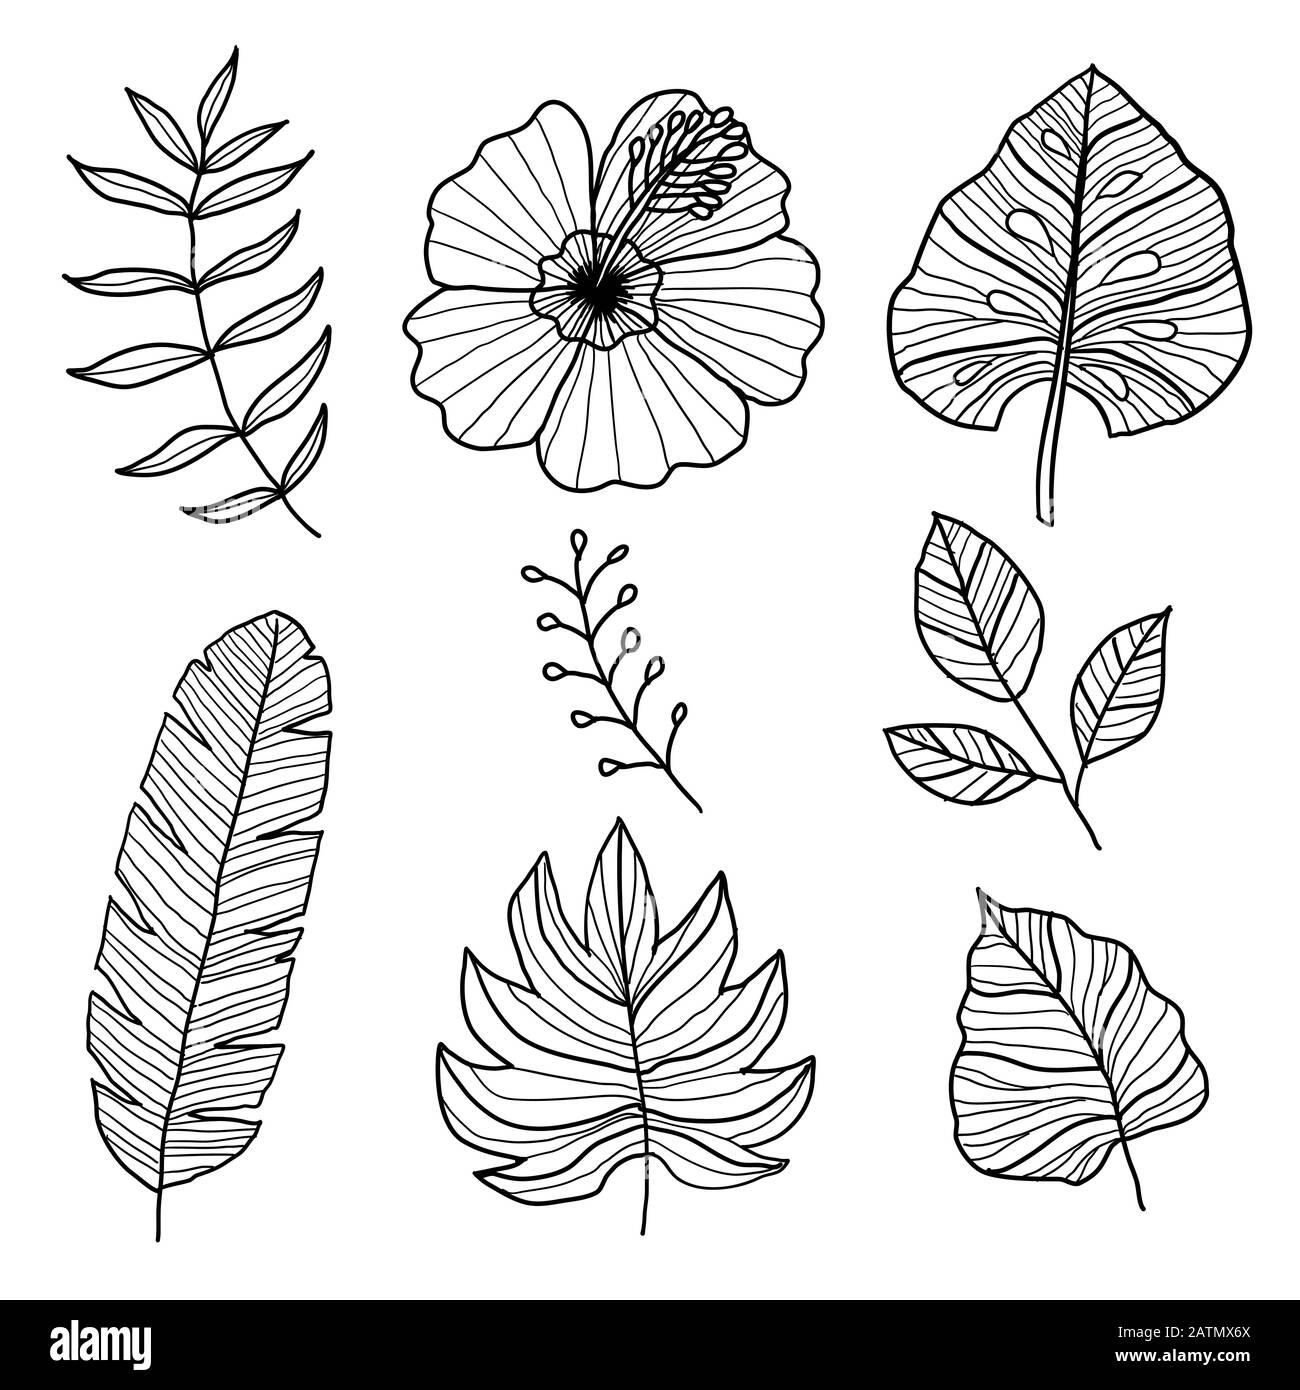 Set aus botanischen Vektorelementen, tropischen Blättern und Blumen auf weißem Hintergrund. Handgezeichneter Stil - Vektor-Ilustration Stock Vektor